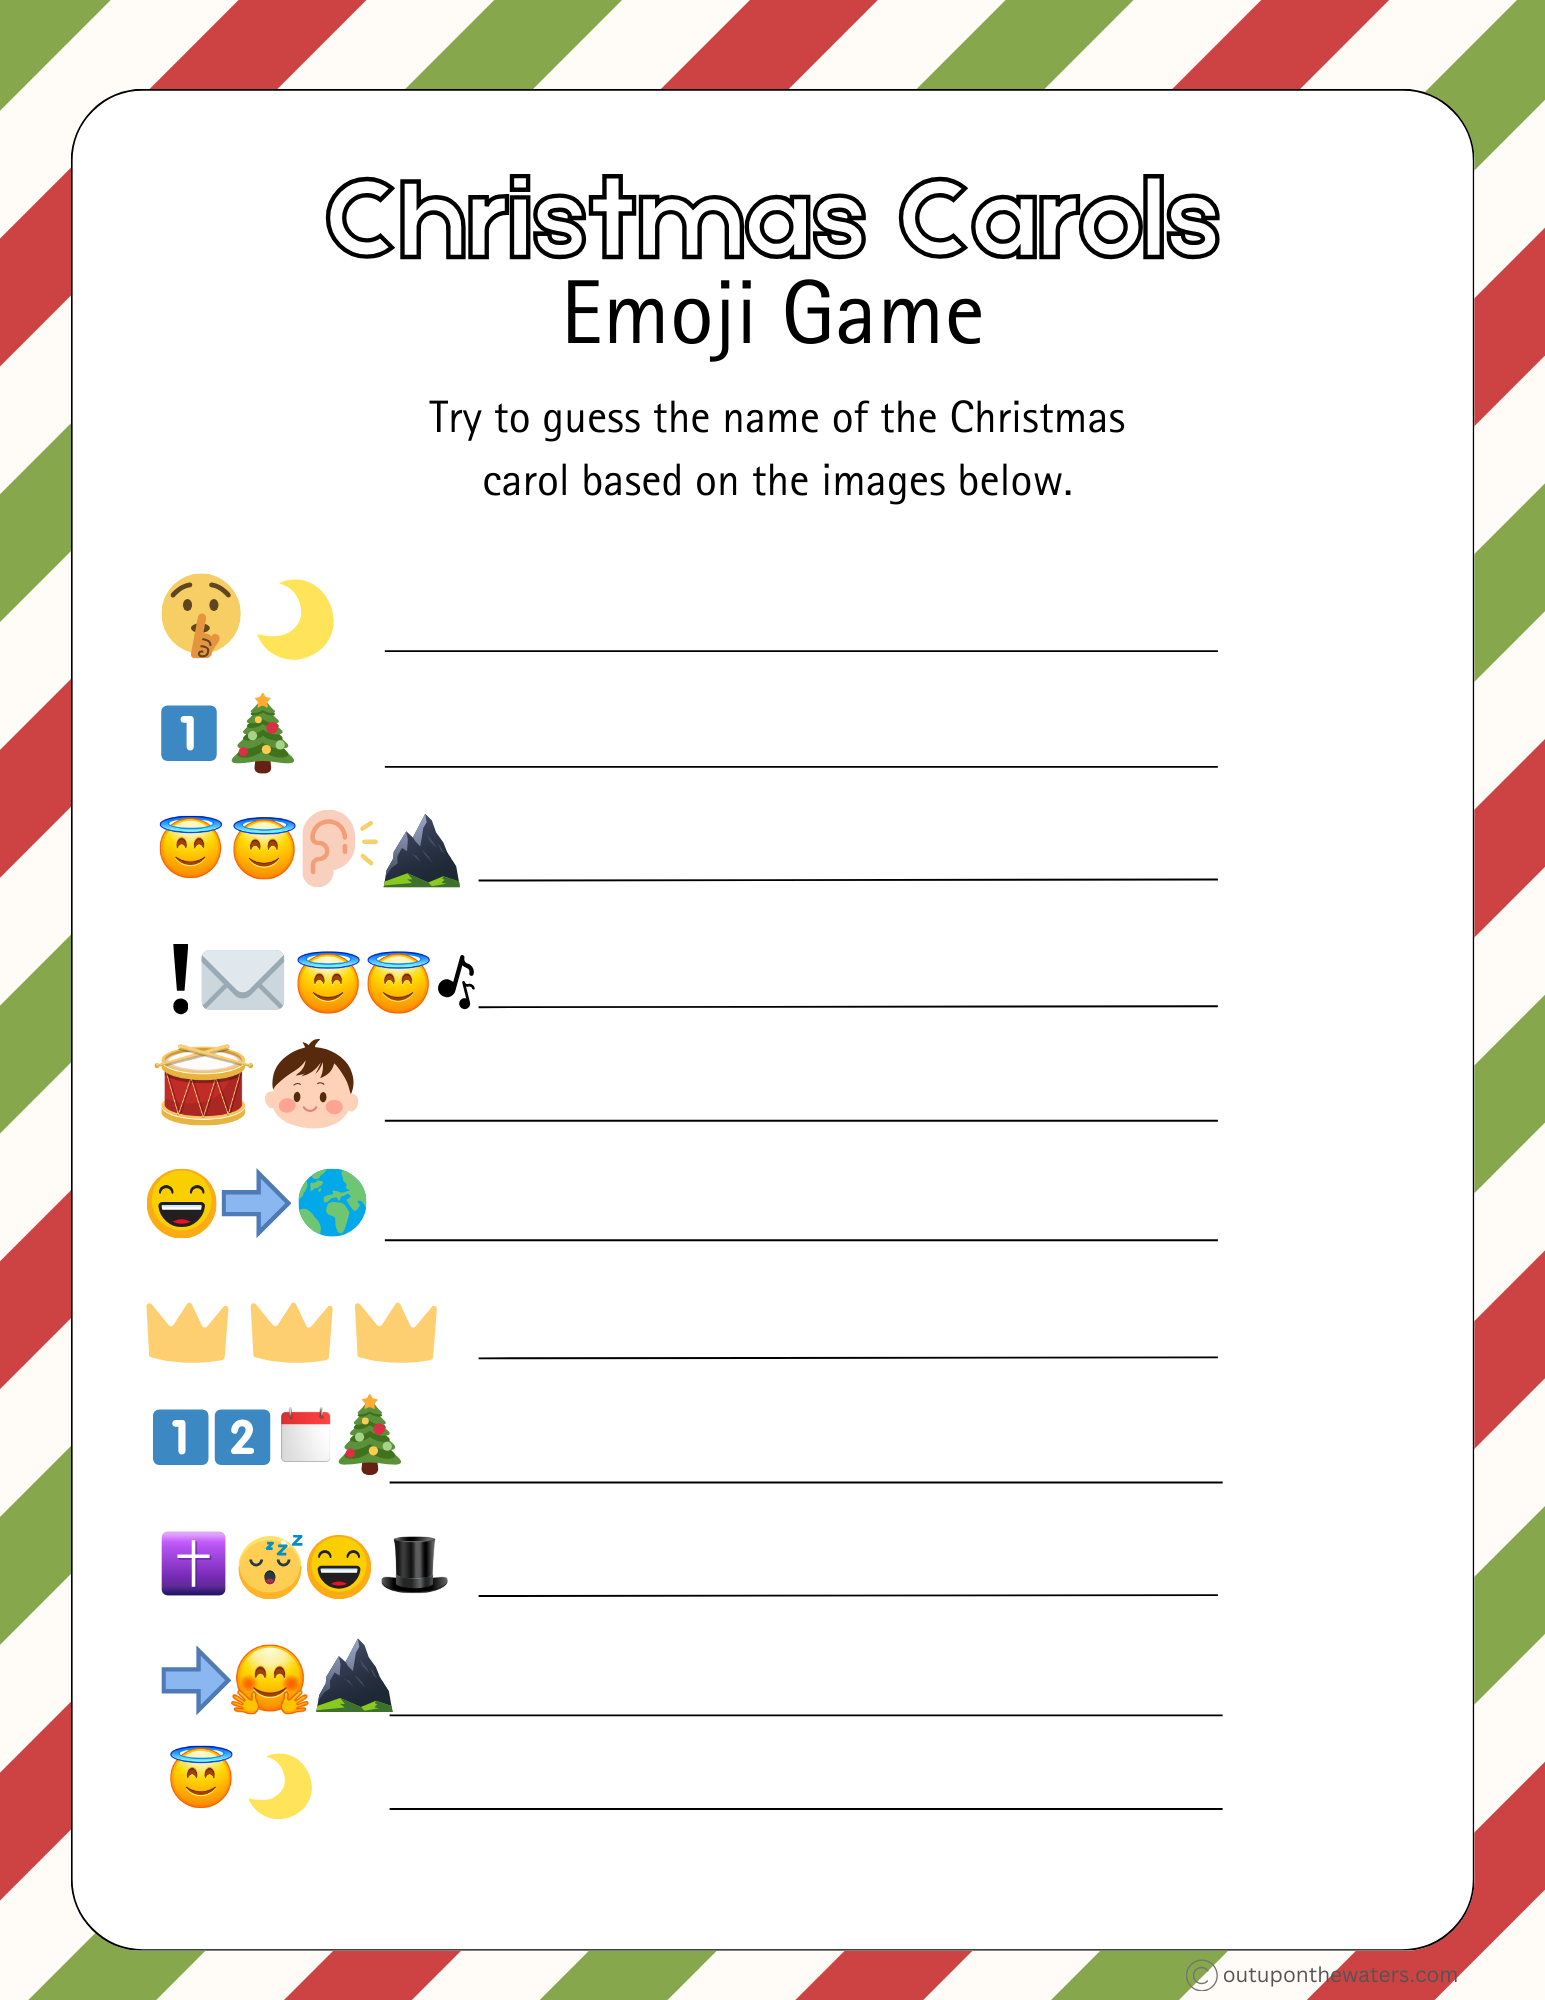 Christmas Emoji Game Printable: Christmas Carols - Out Upon the Waters